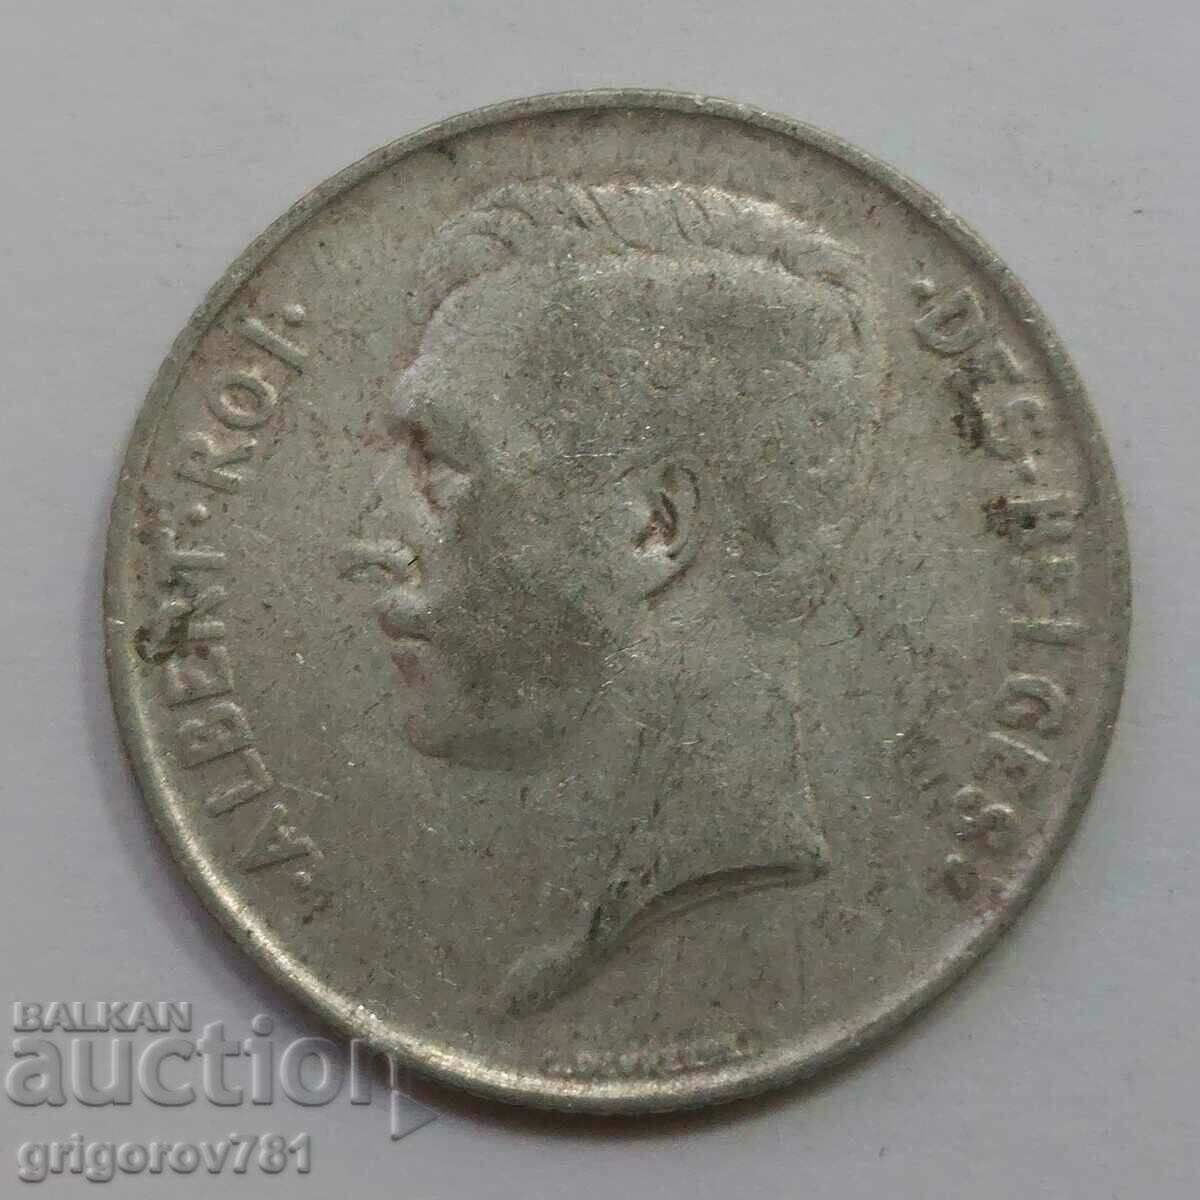 1 Franc Silver Belgium 1911 - Silver Coin #55